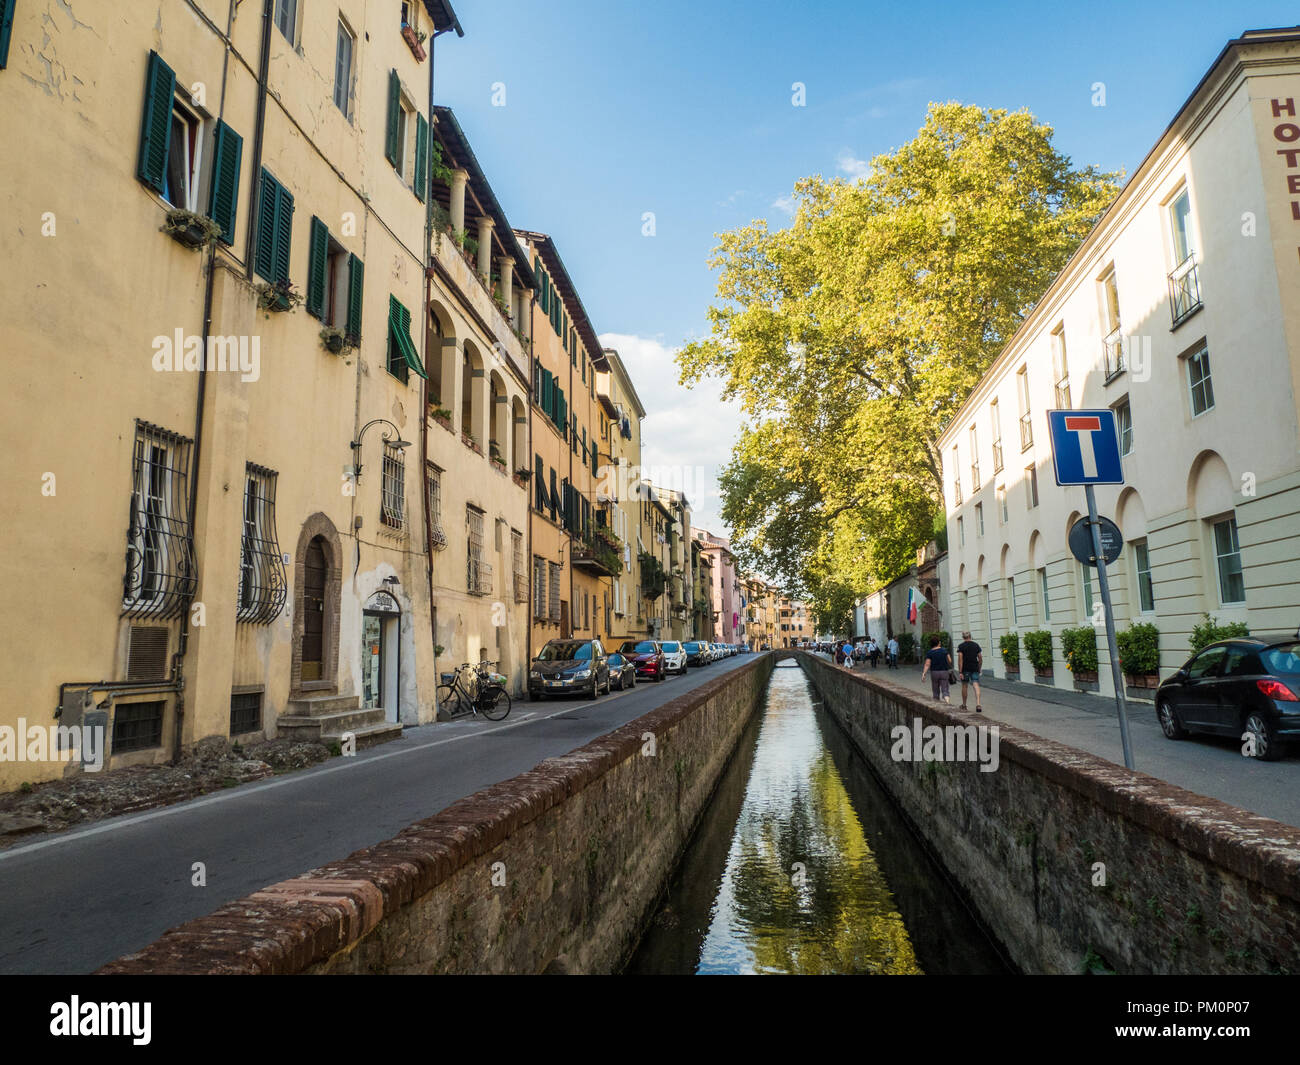 Canale storico/fluviale nella città murata di Lucca, Toscana, Italia. Foto Stock